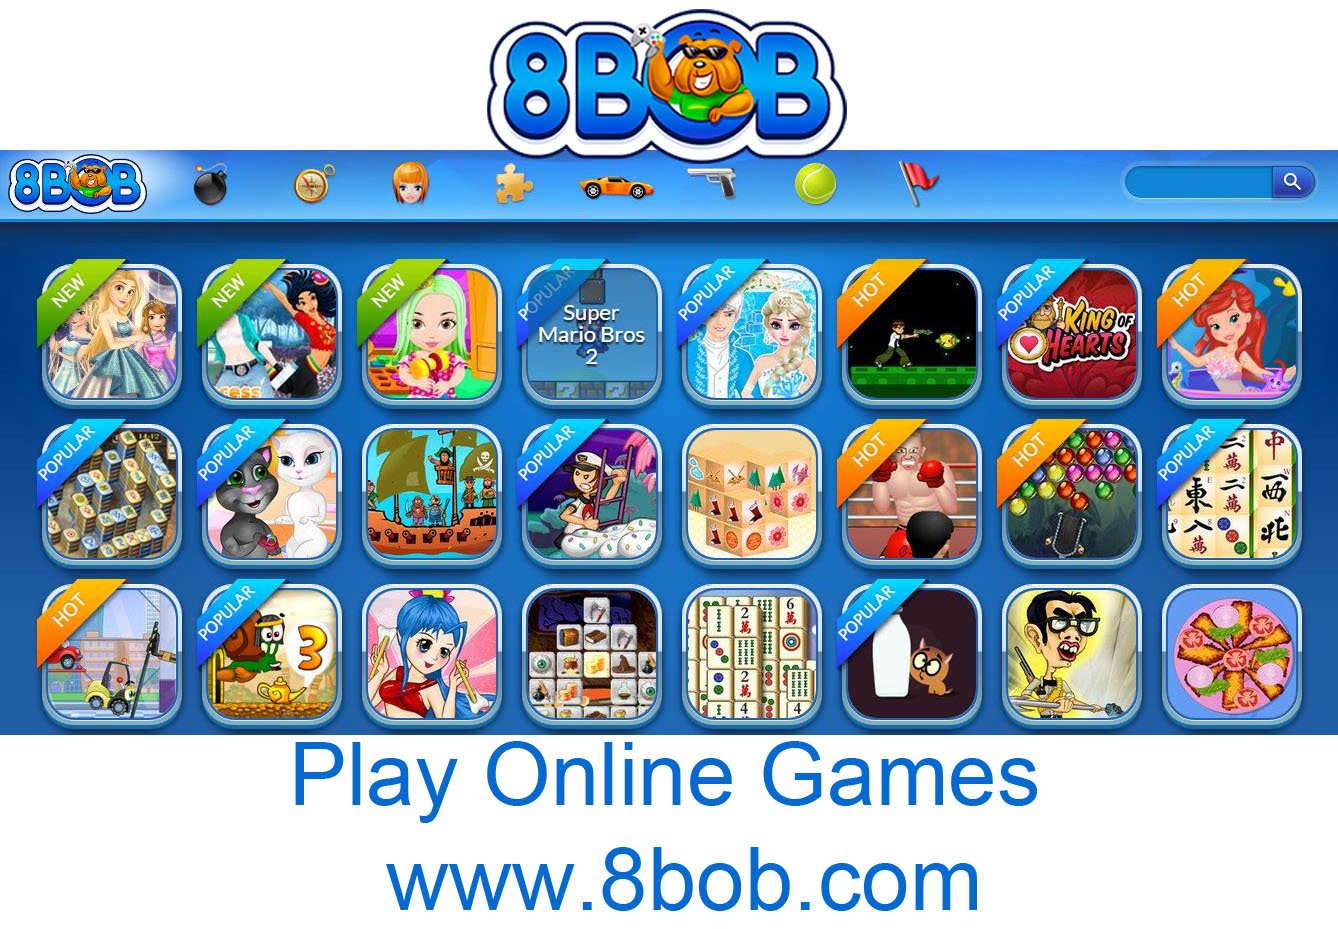 8bob - Play Online Games | www.8bob.com